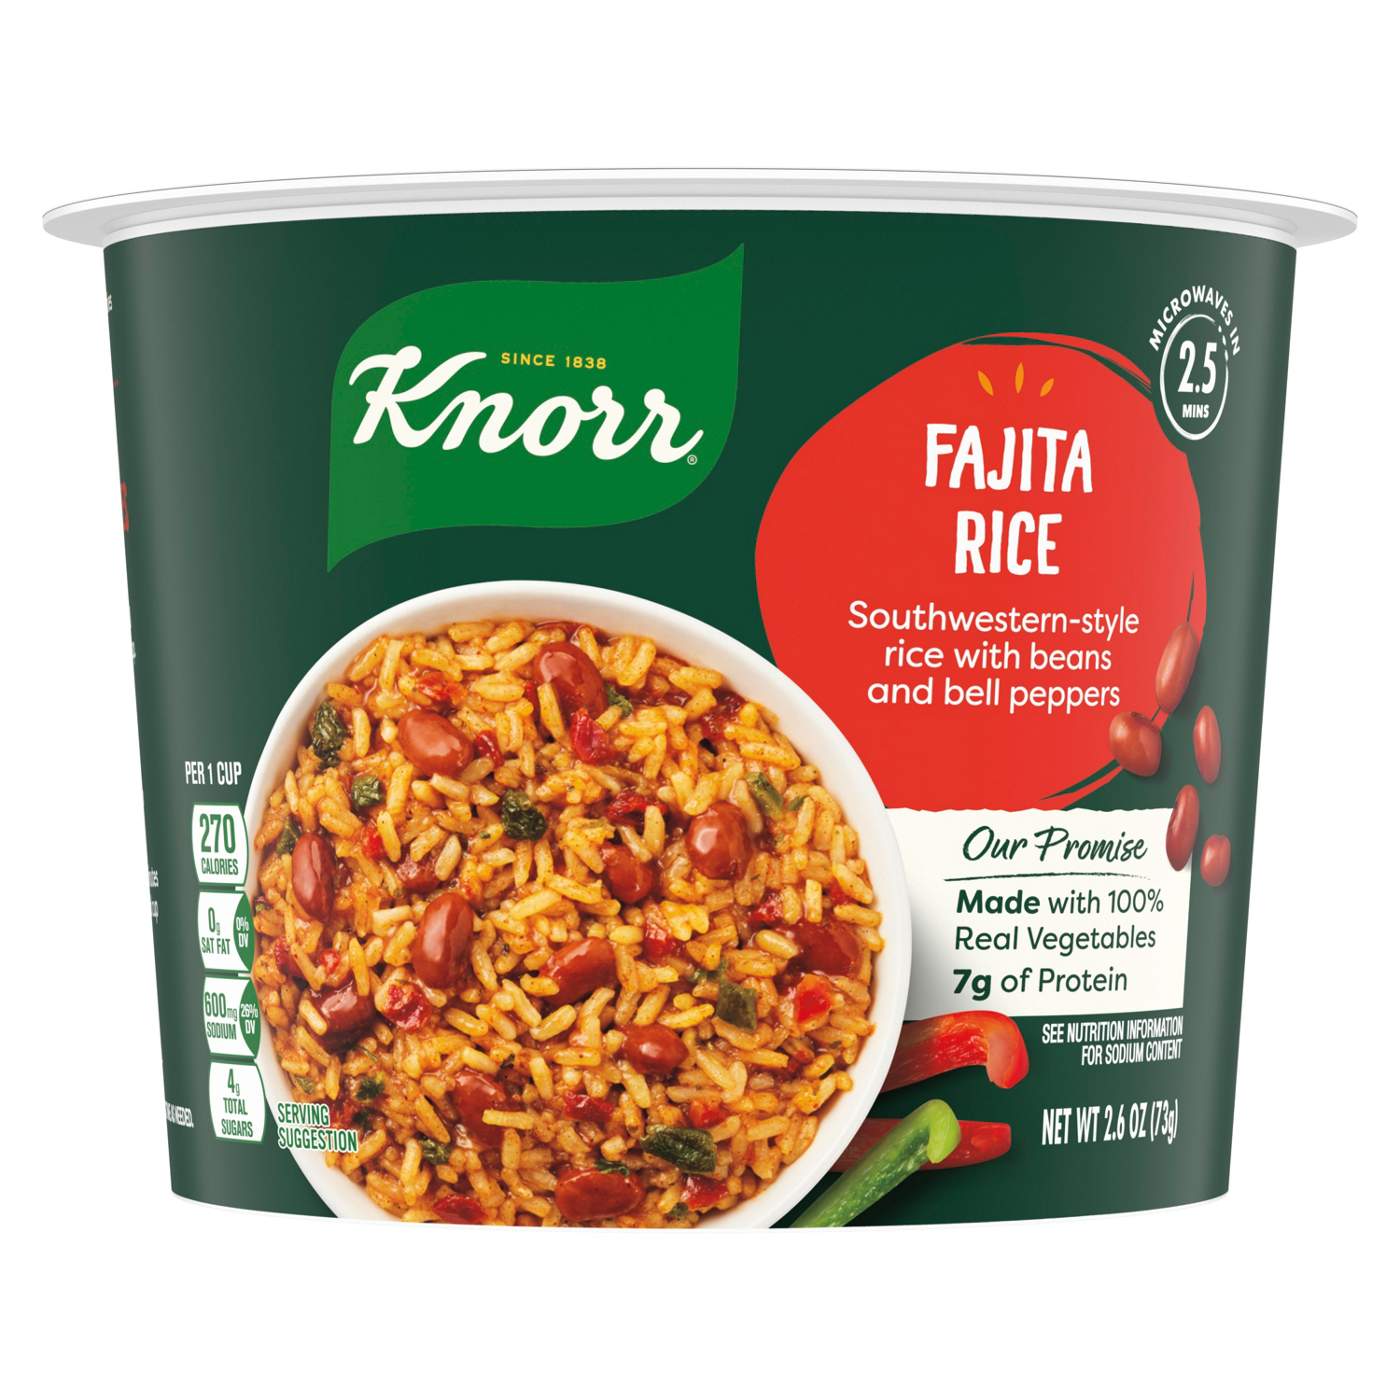 Knorr Fajita Rice Cup; image 1 of 7